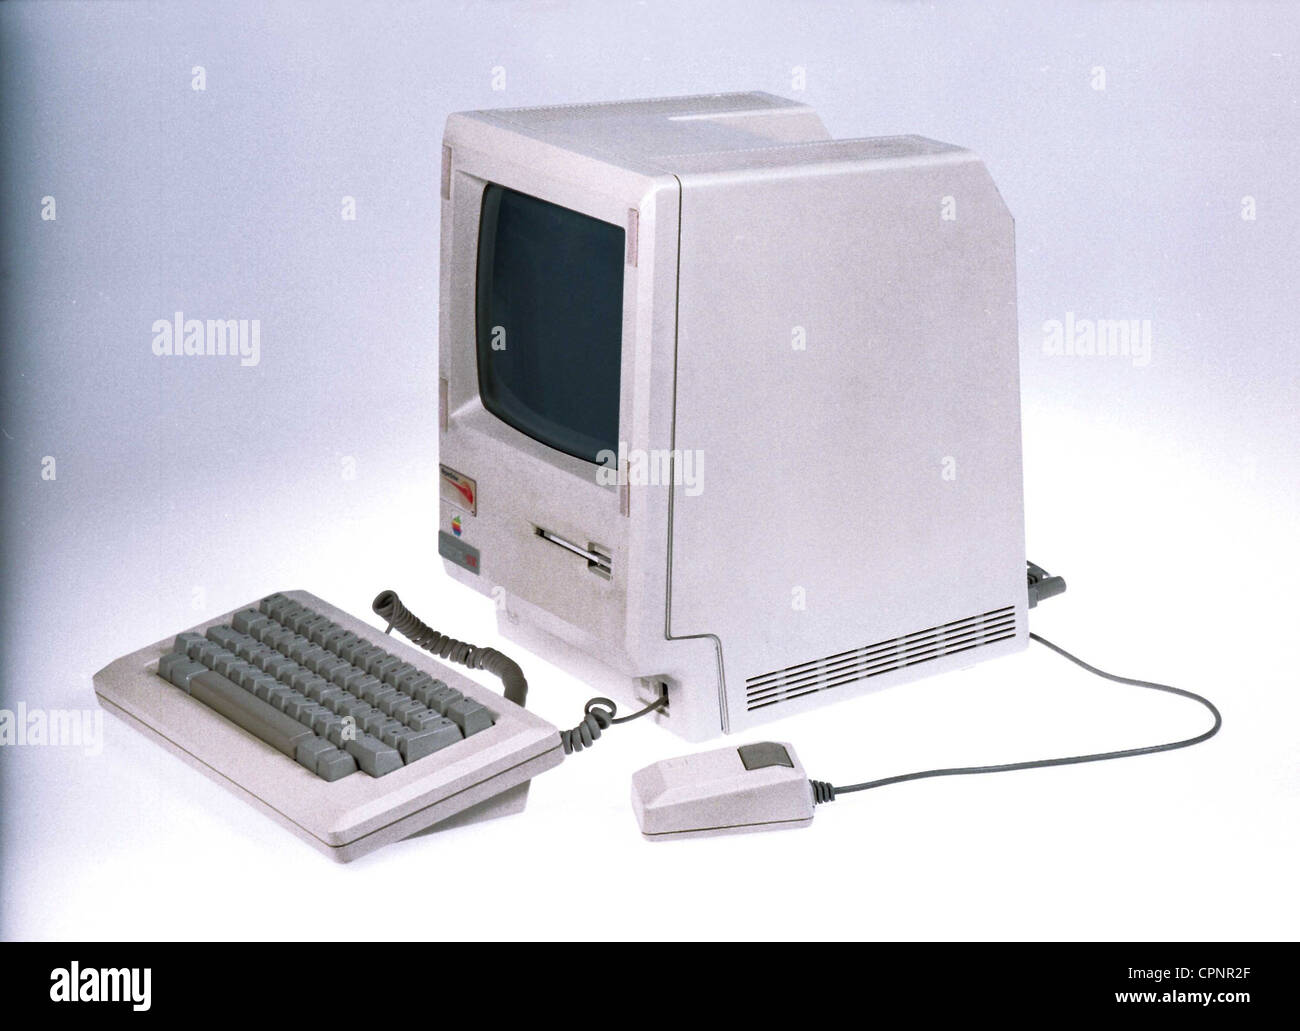 Computer / Elektronik,Computer,Apple Macintosh 512k,mit integriertem 9 Zoll  bw-Monitor und 3.5 Zoll  Diskettenlaufwerk,USA,1984,Tastatur,Tastaturen,Computermaus,Klicker,Mäuse,Mäuse,512  Kilobyte wahlfreier Speicher,Prozessor Motorola 68000,8 Megahertz ...